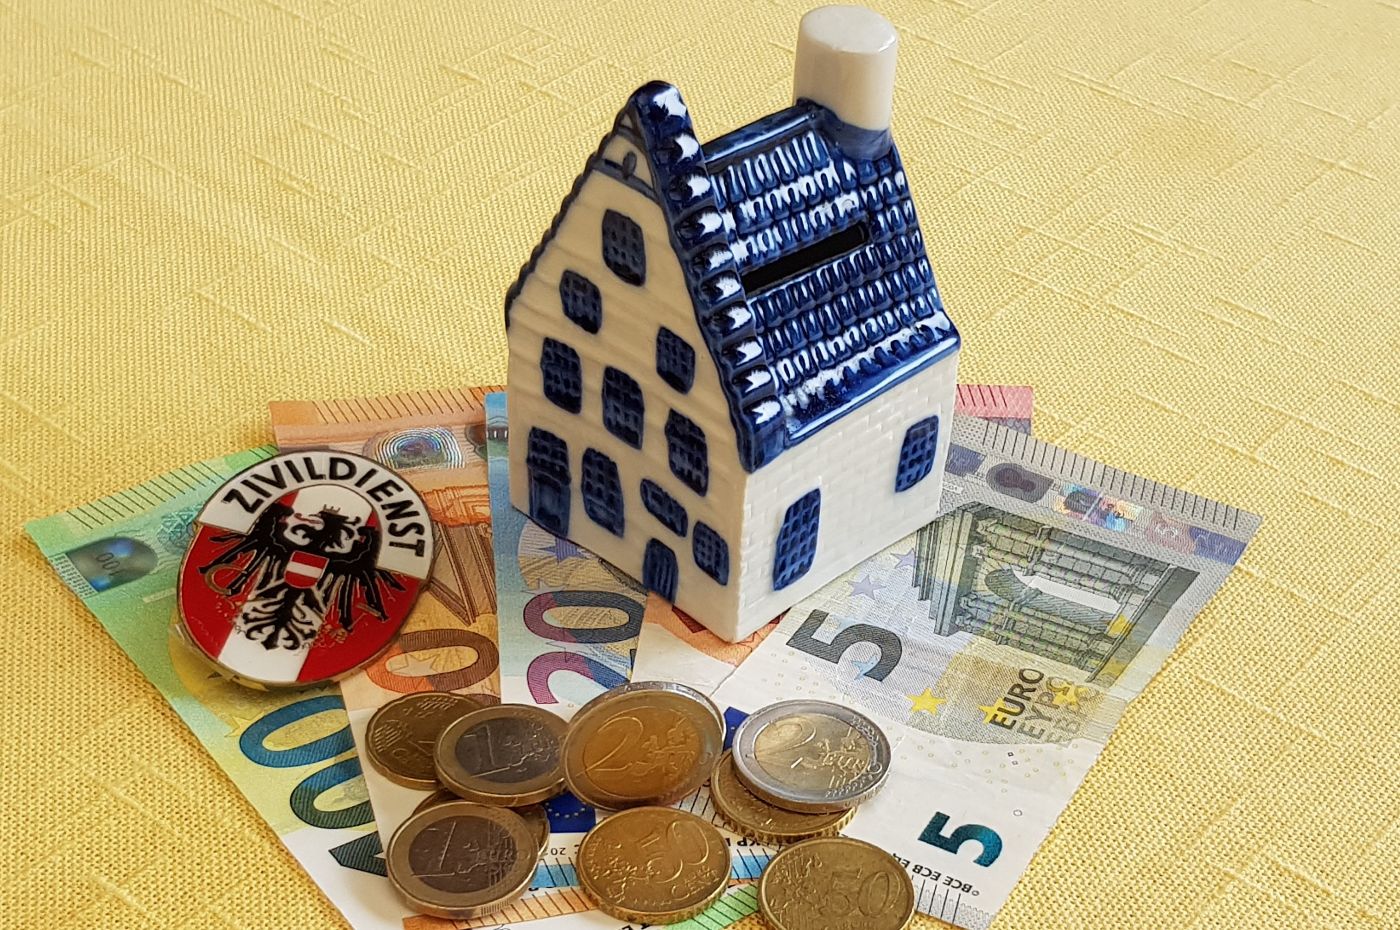 Kleines Keramik-Spielzeughaus steht auf Geldscheinen. Auf den Geldscheinen liegen Münzen. Die Fassade und der Rauchfang des Hauses sind weiß, die Tür, Fenster und das Dach sind blau.